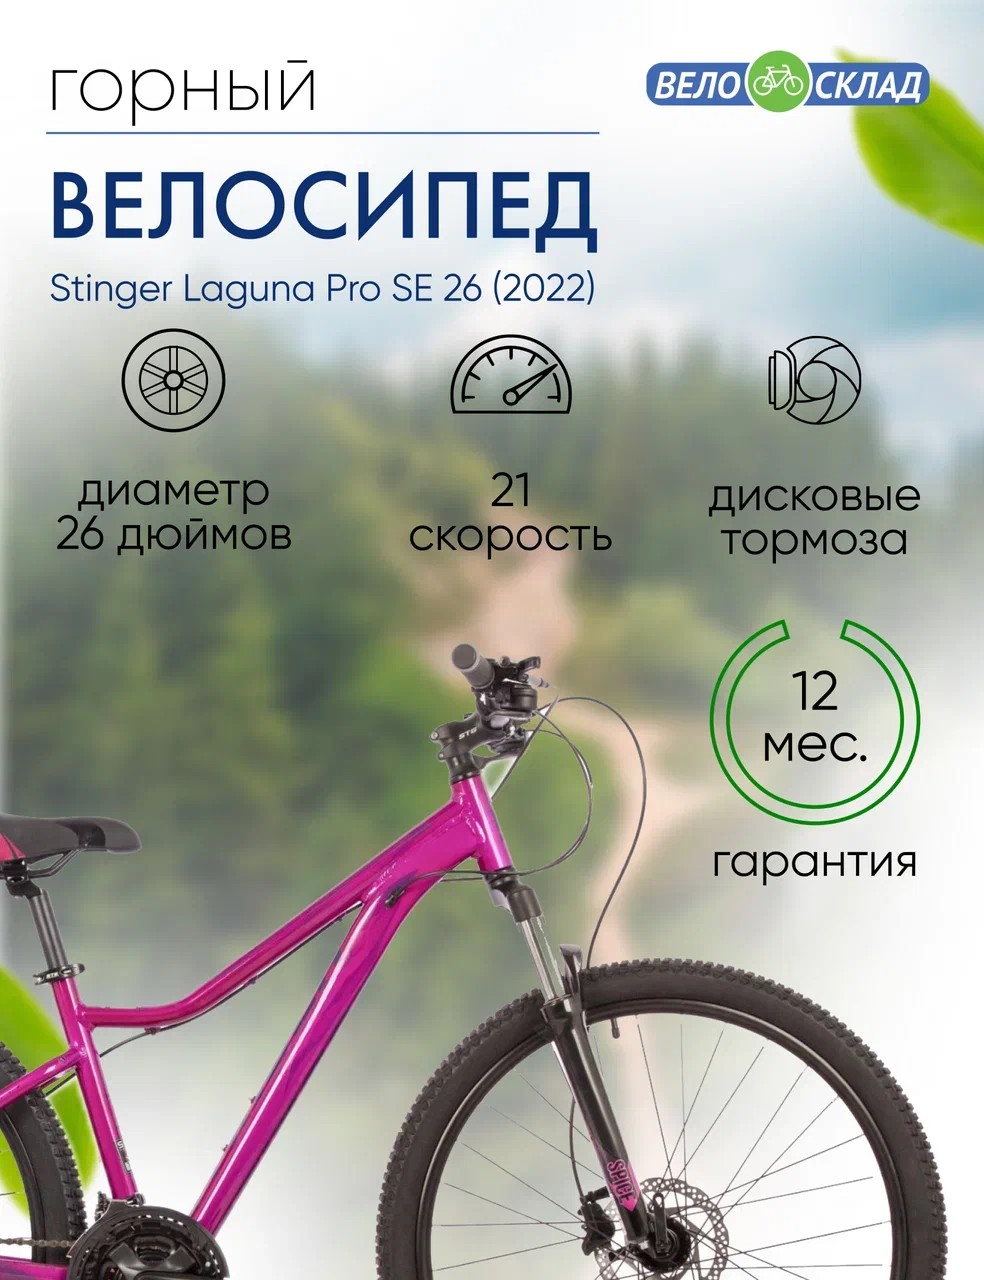 Женский велосипед Stinger Laguna Pro SE 26, год 2022, цвет Розовый, ростовка 17